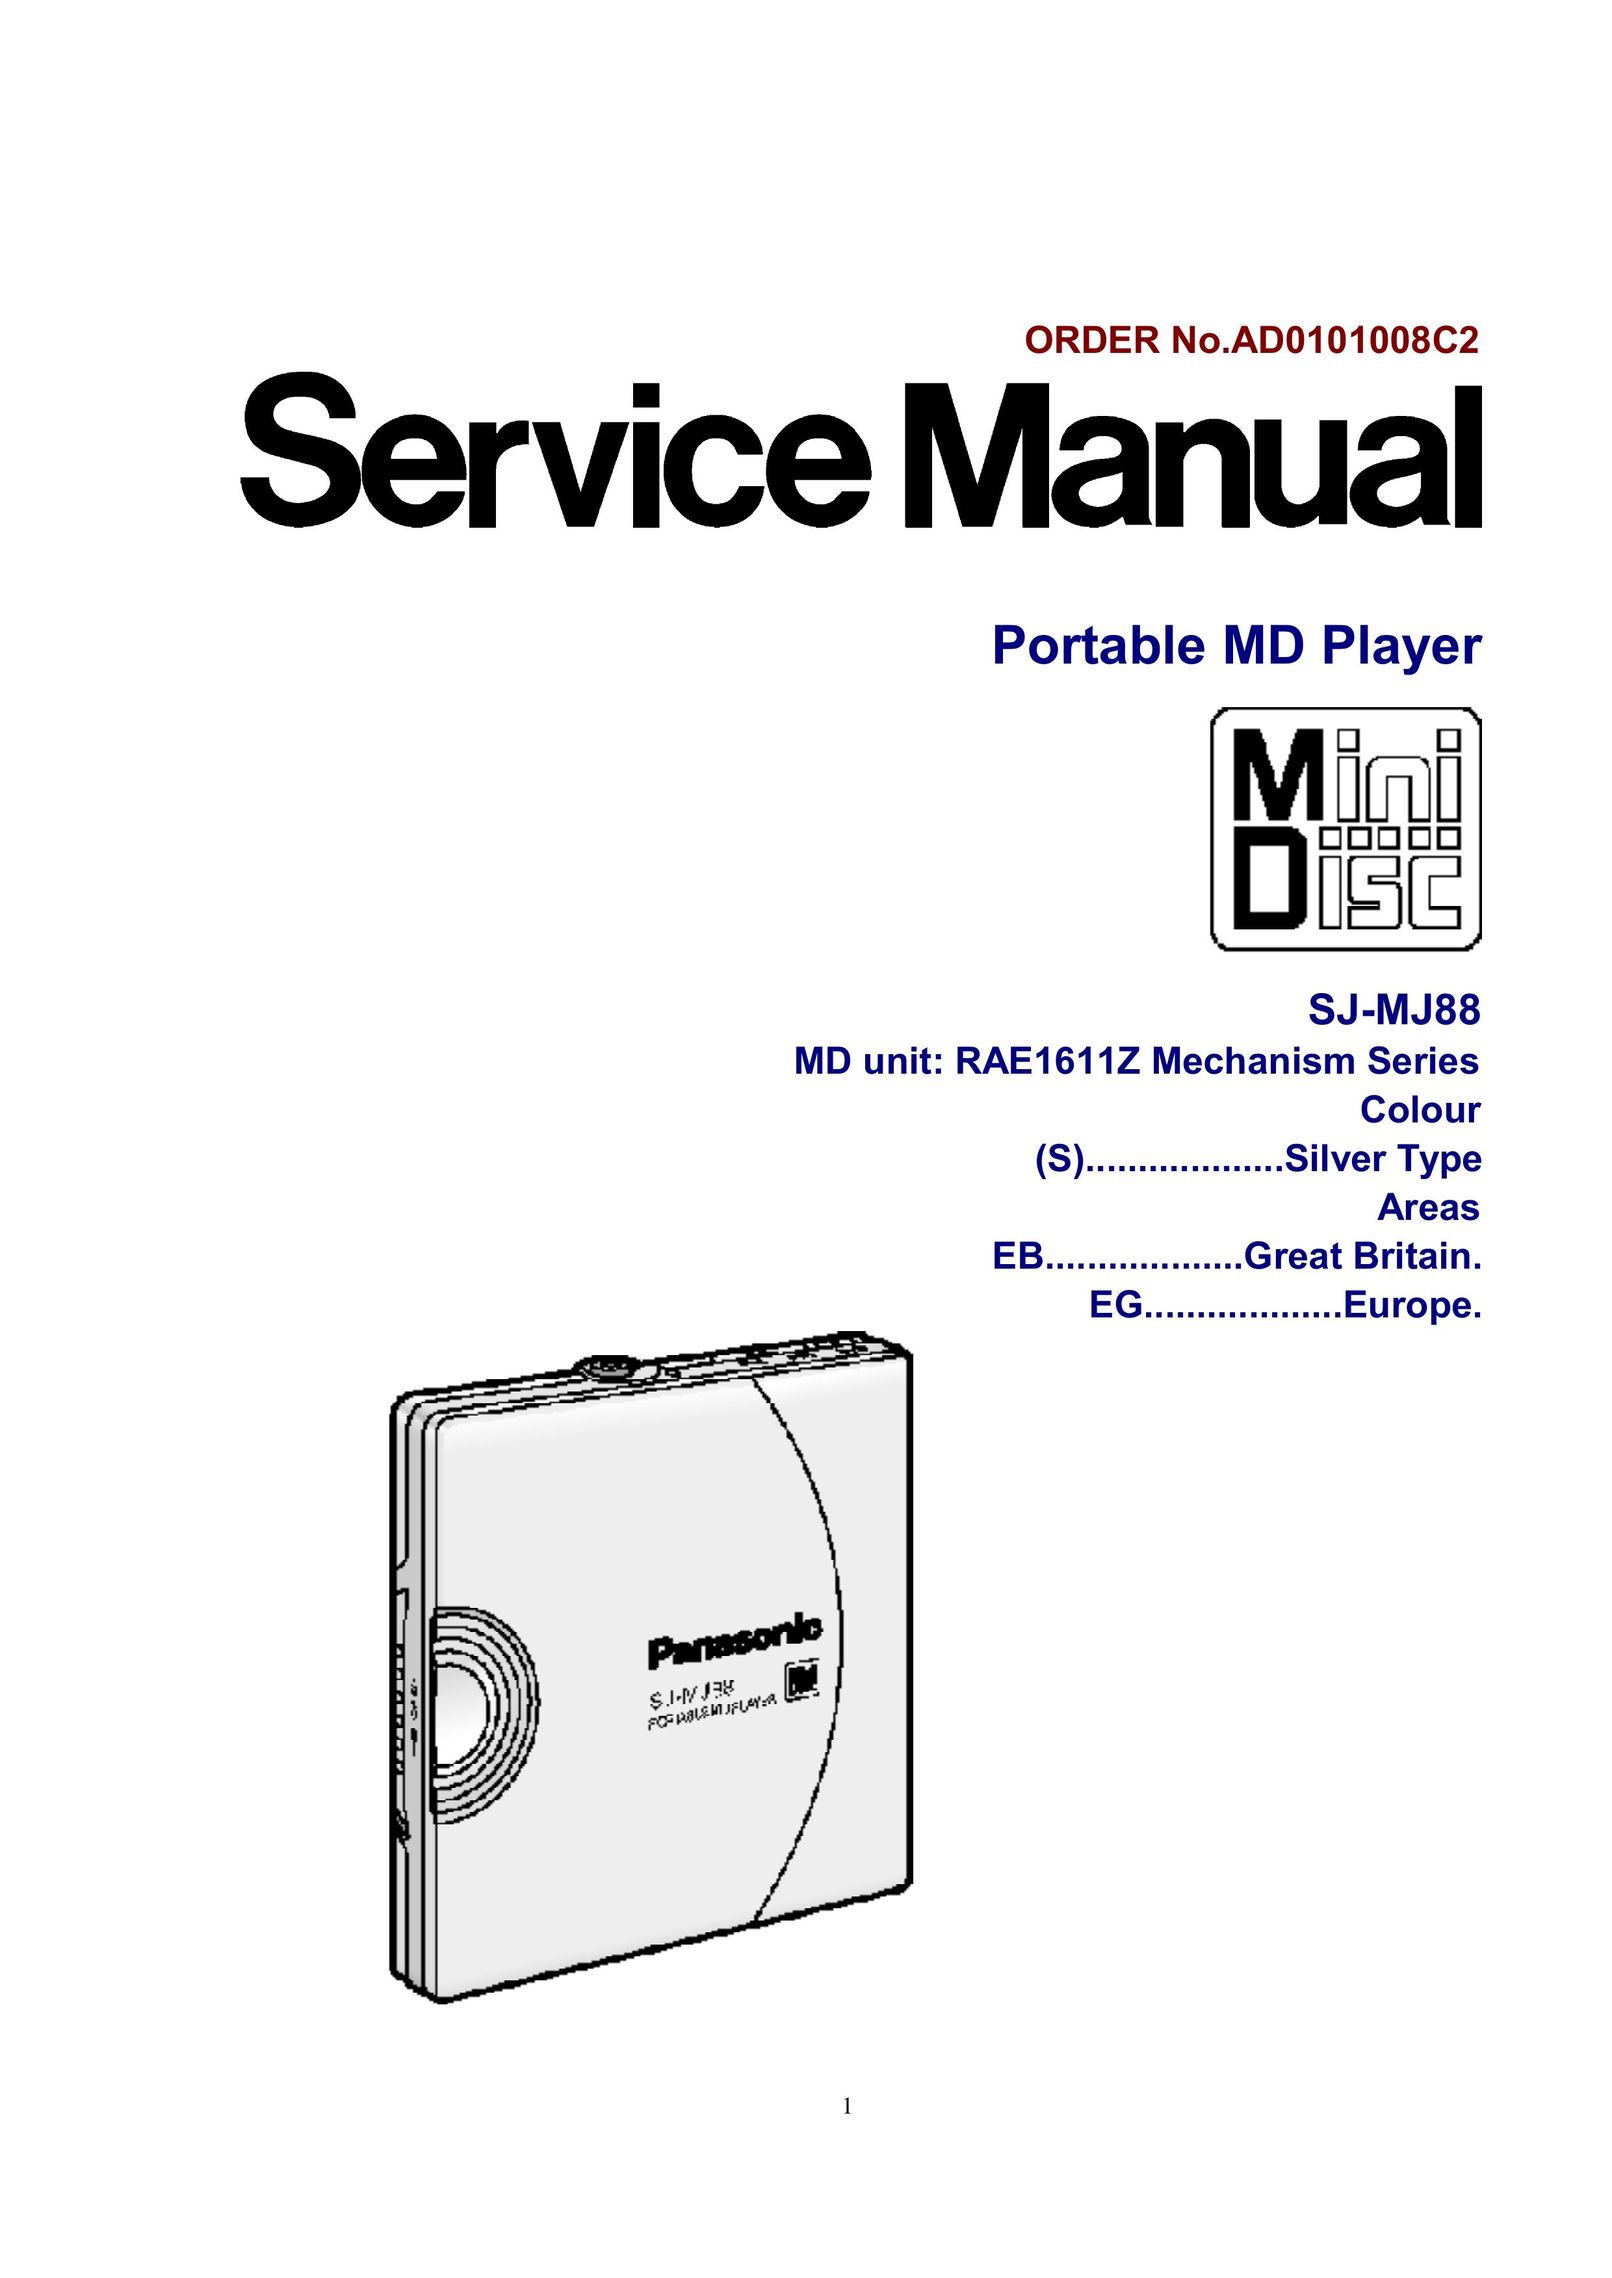 Panasonic SJ-MJ88 MiniDisc Player User Manual